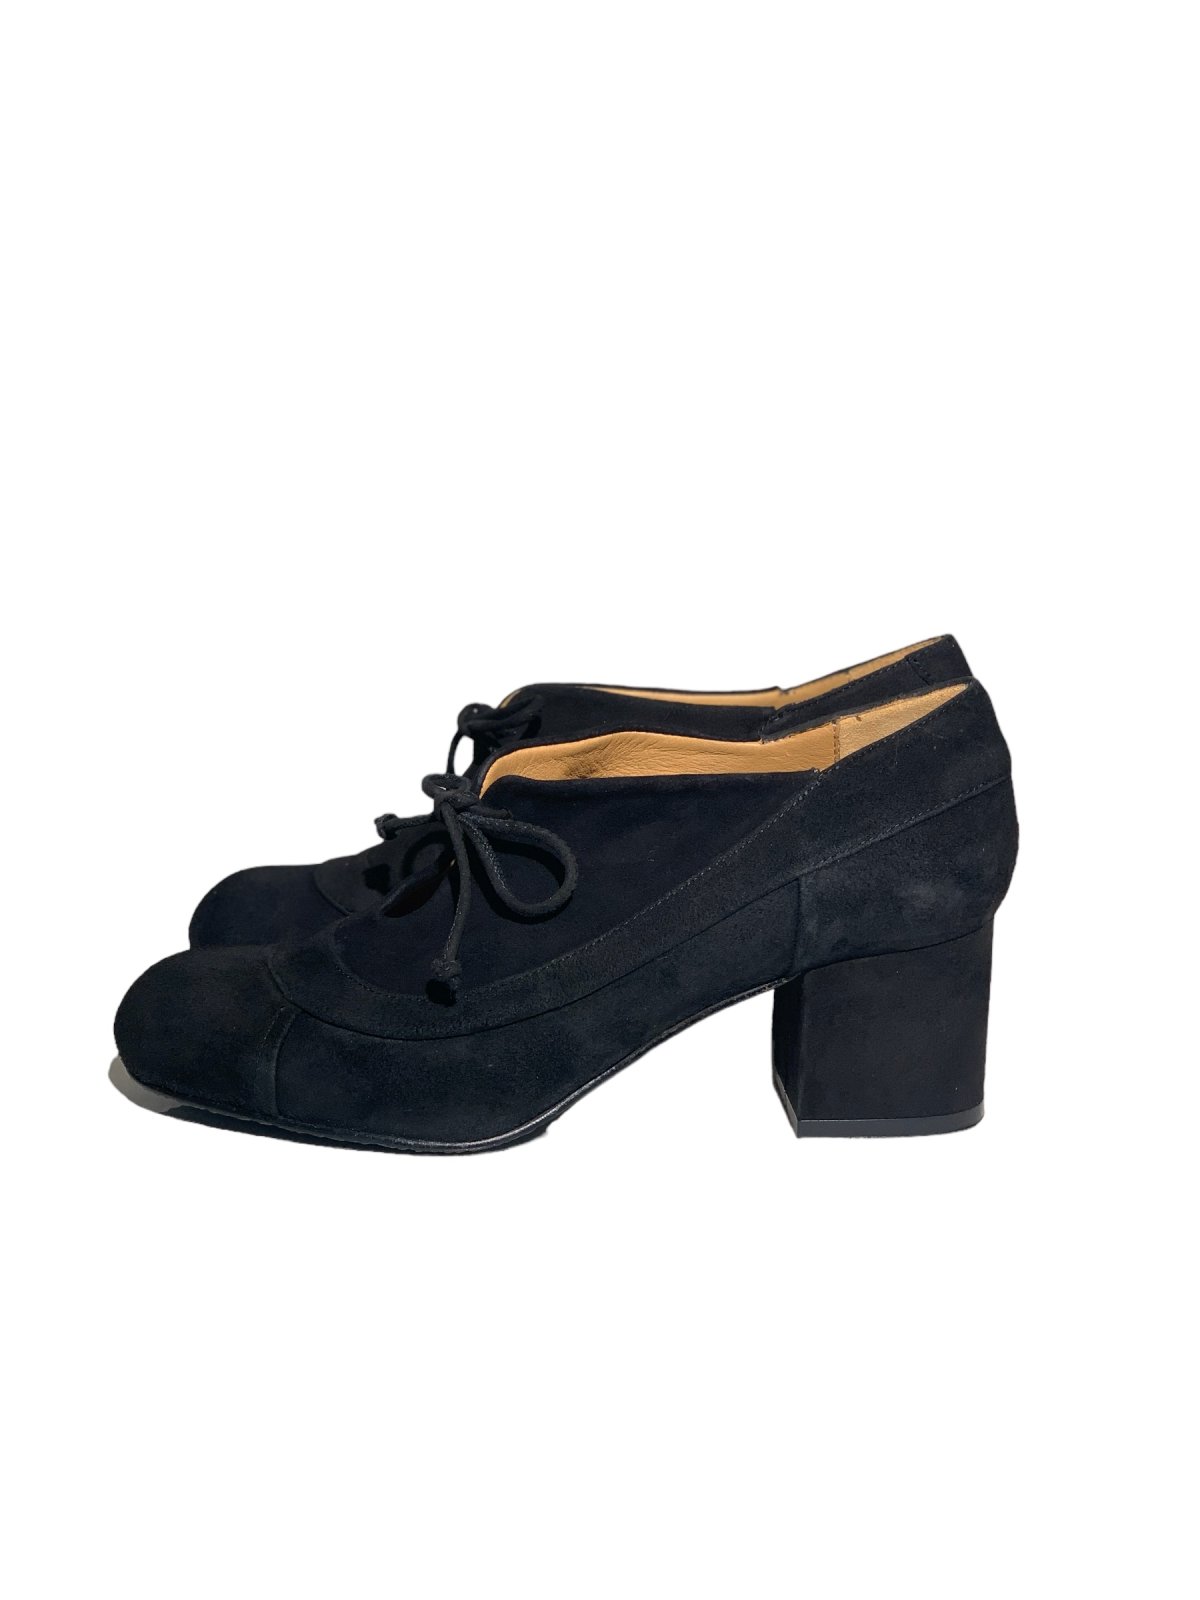 Mose båd Alternativ Audley sko med hæl og snøre, ruskind, sort - Audley - Fiona sko